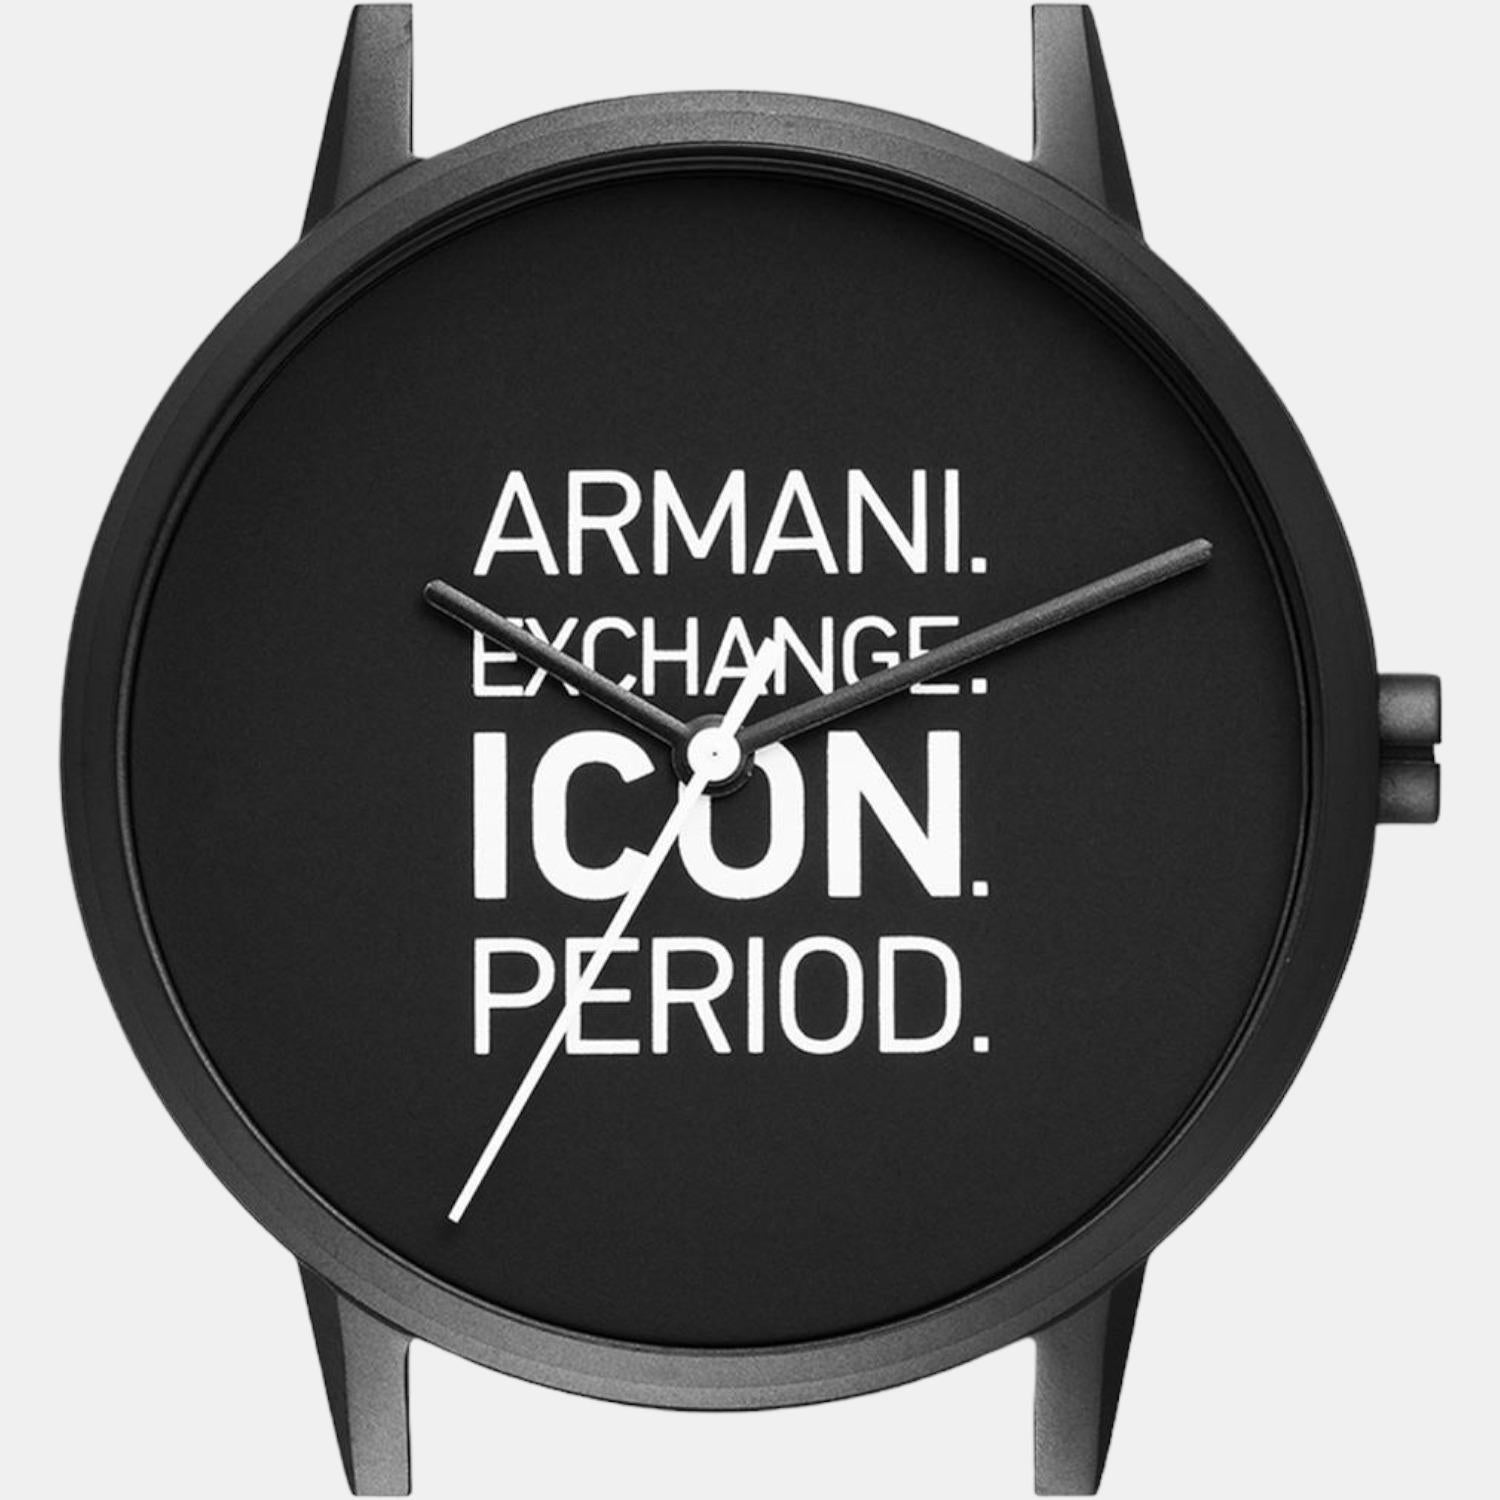 Armani Exchange Male Analog Leather Watch | Armani Exchange – Just